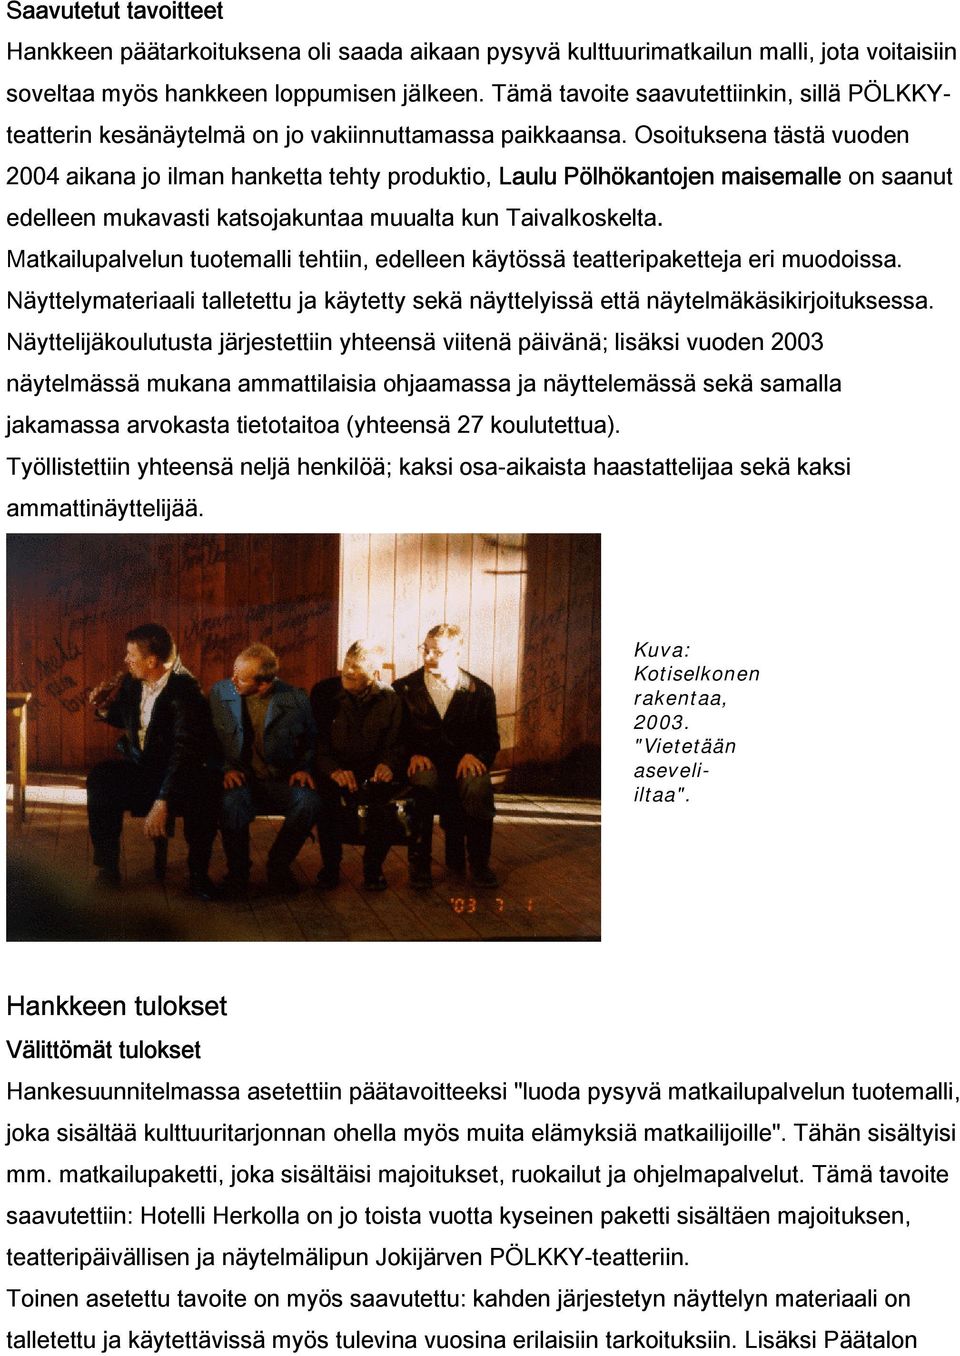 Osoituksena tästä vuoden 2004 aikana jo ilman hanketta tehty produktio, Laulu Pölhökantojen maisemalle on saanut edelleen mukavasti katsojakuntaa muualta kun Taivalkoskelta.